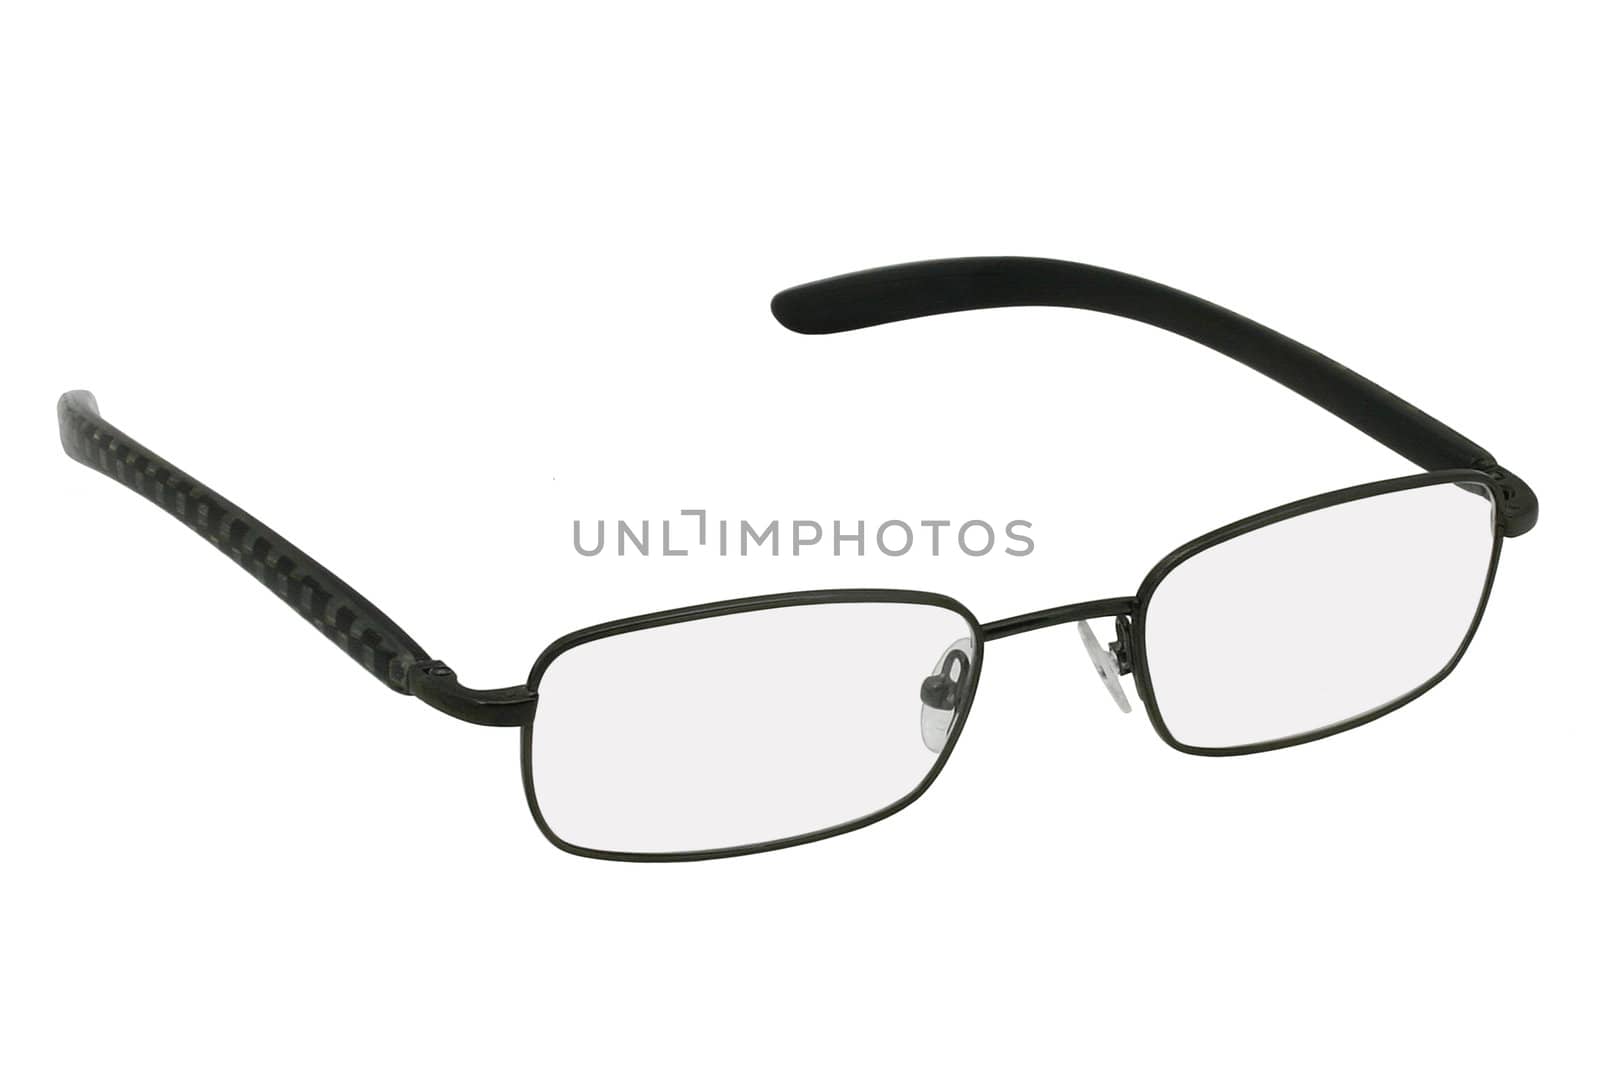 Glasses in black rim. by fotorobs